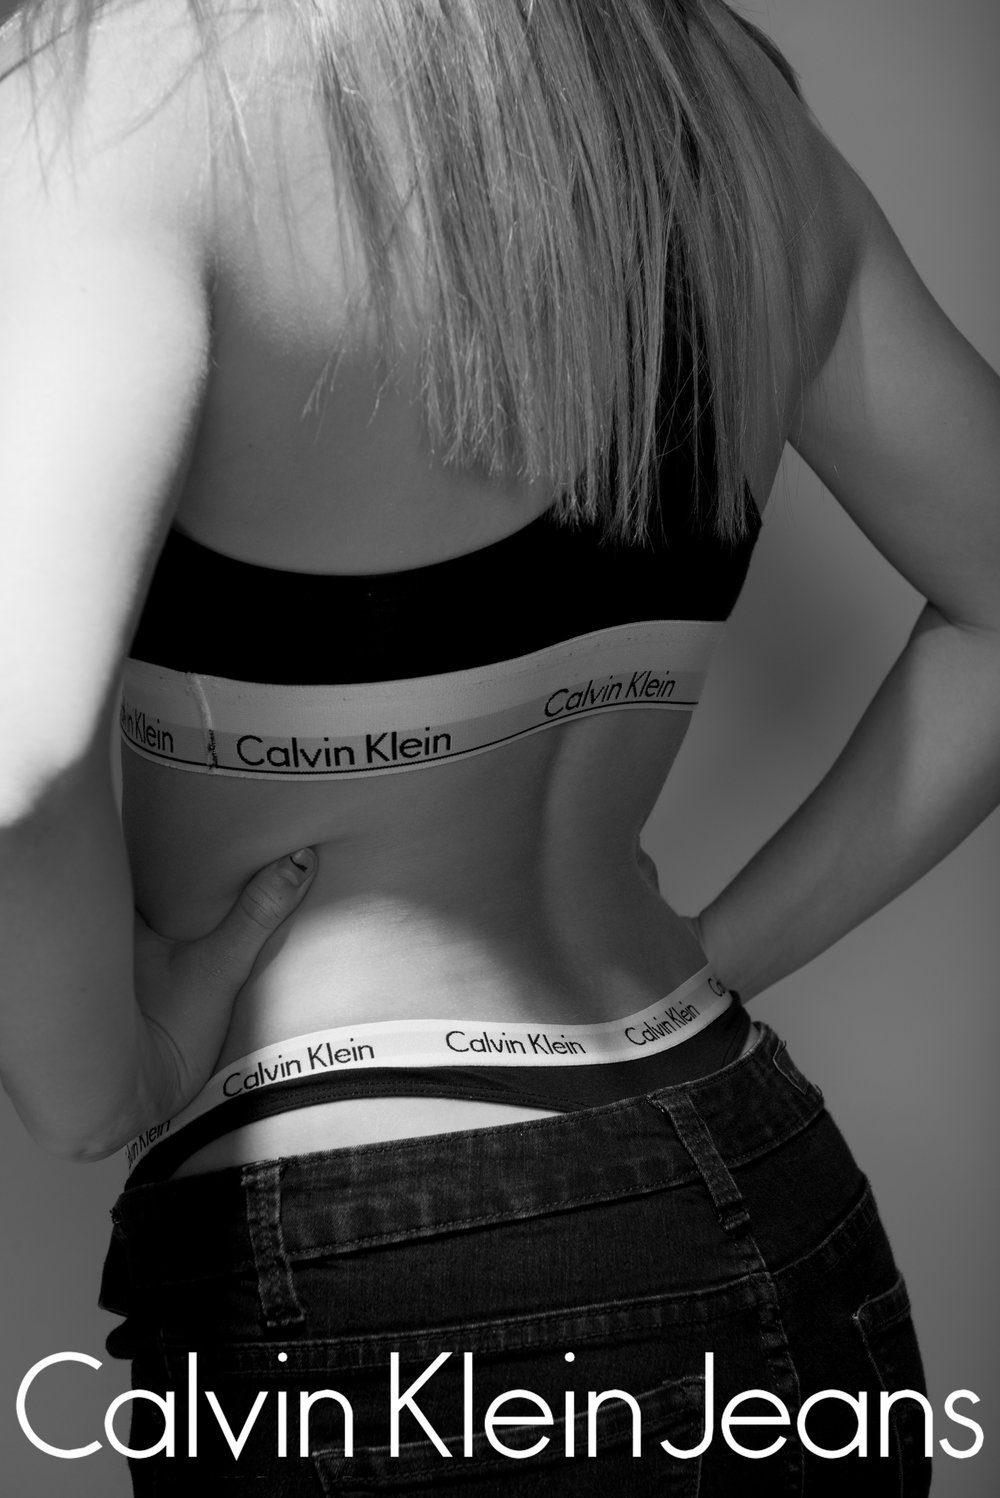 Calvin Klein Photoshoot — RUSSETT PHOTOGRAPHY